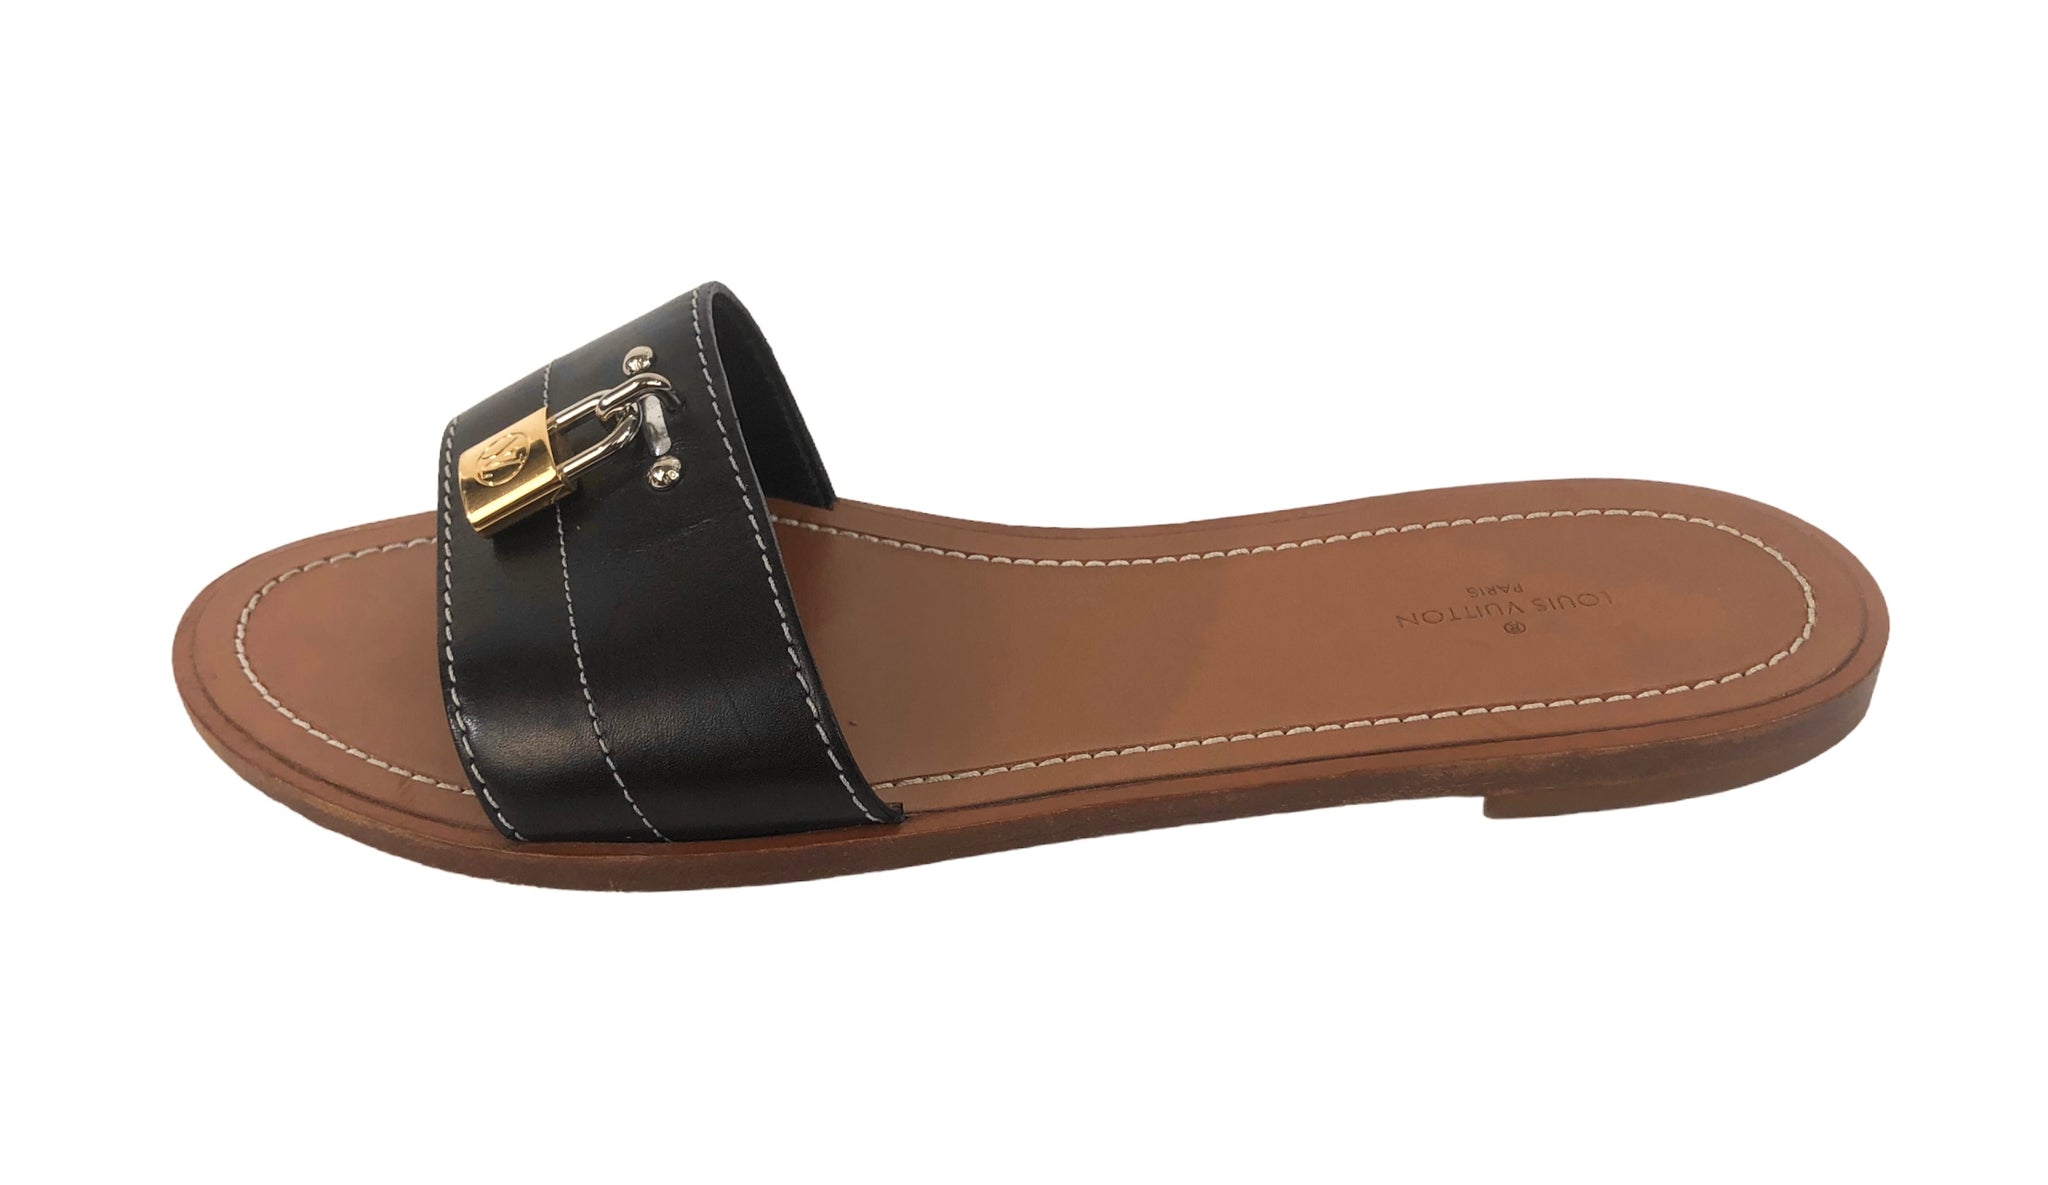 Louis Vuitton, Shoes, Lock It Mule Sandals